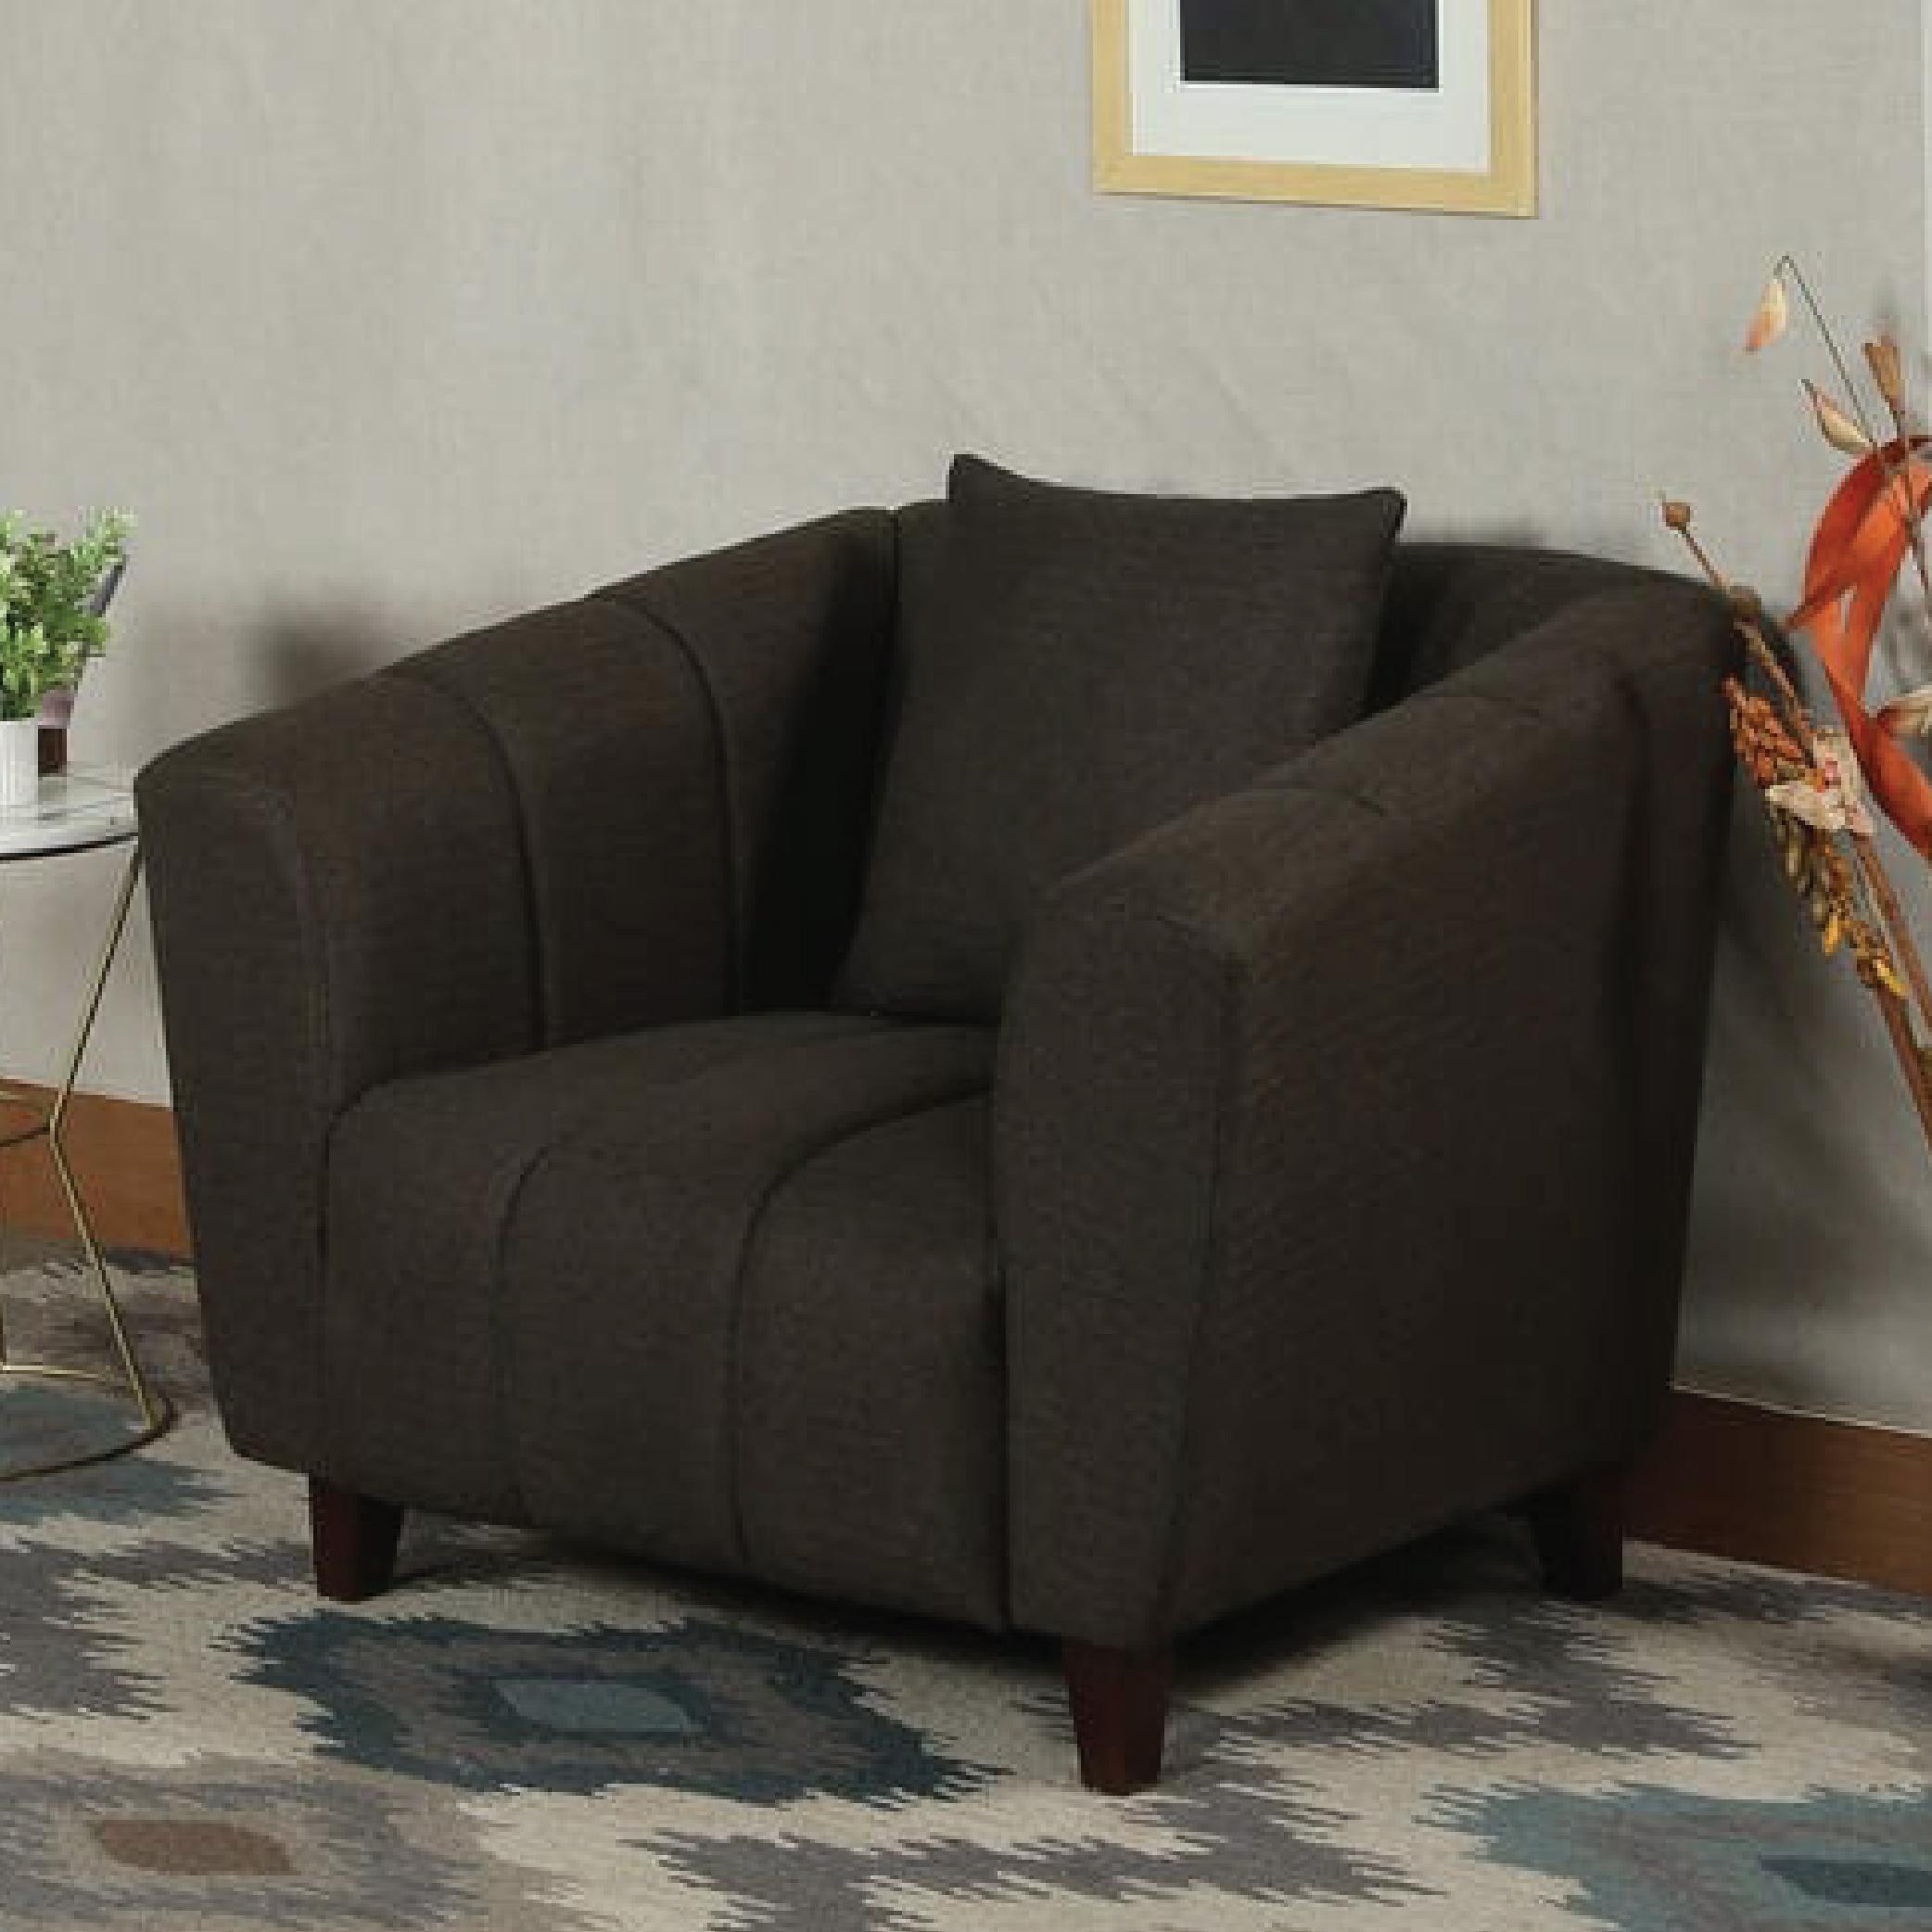 Bobbio One Seater Sofa in Brown Colour